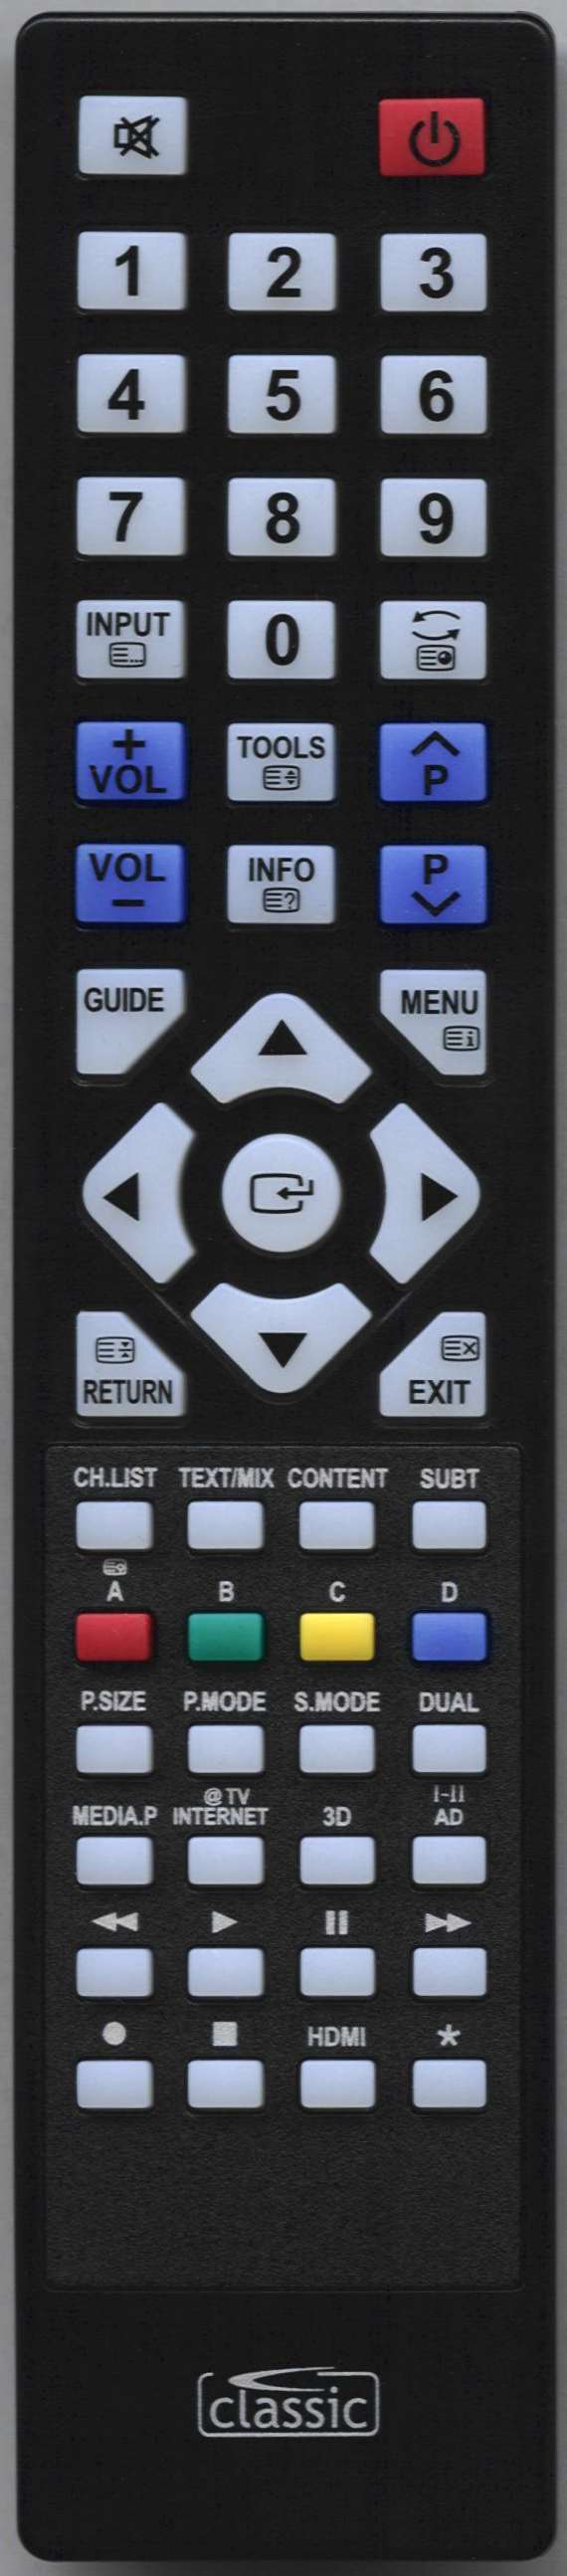 SAMSUNG PS50C450B1MXRD Remote Control